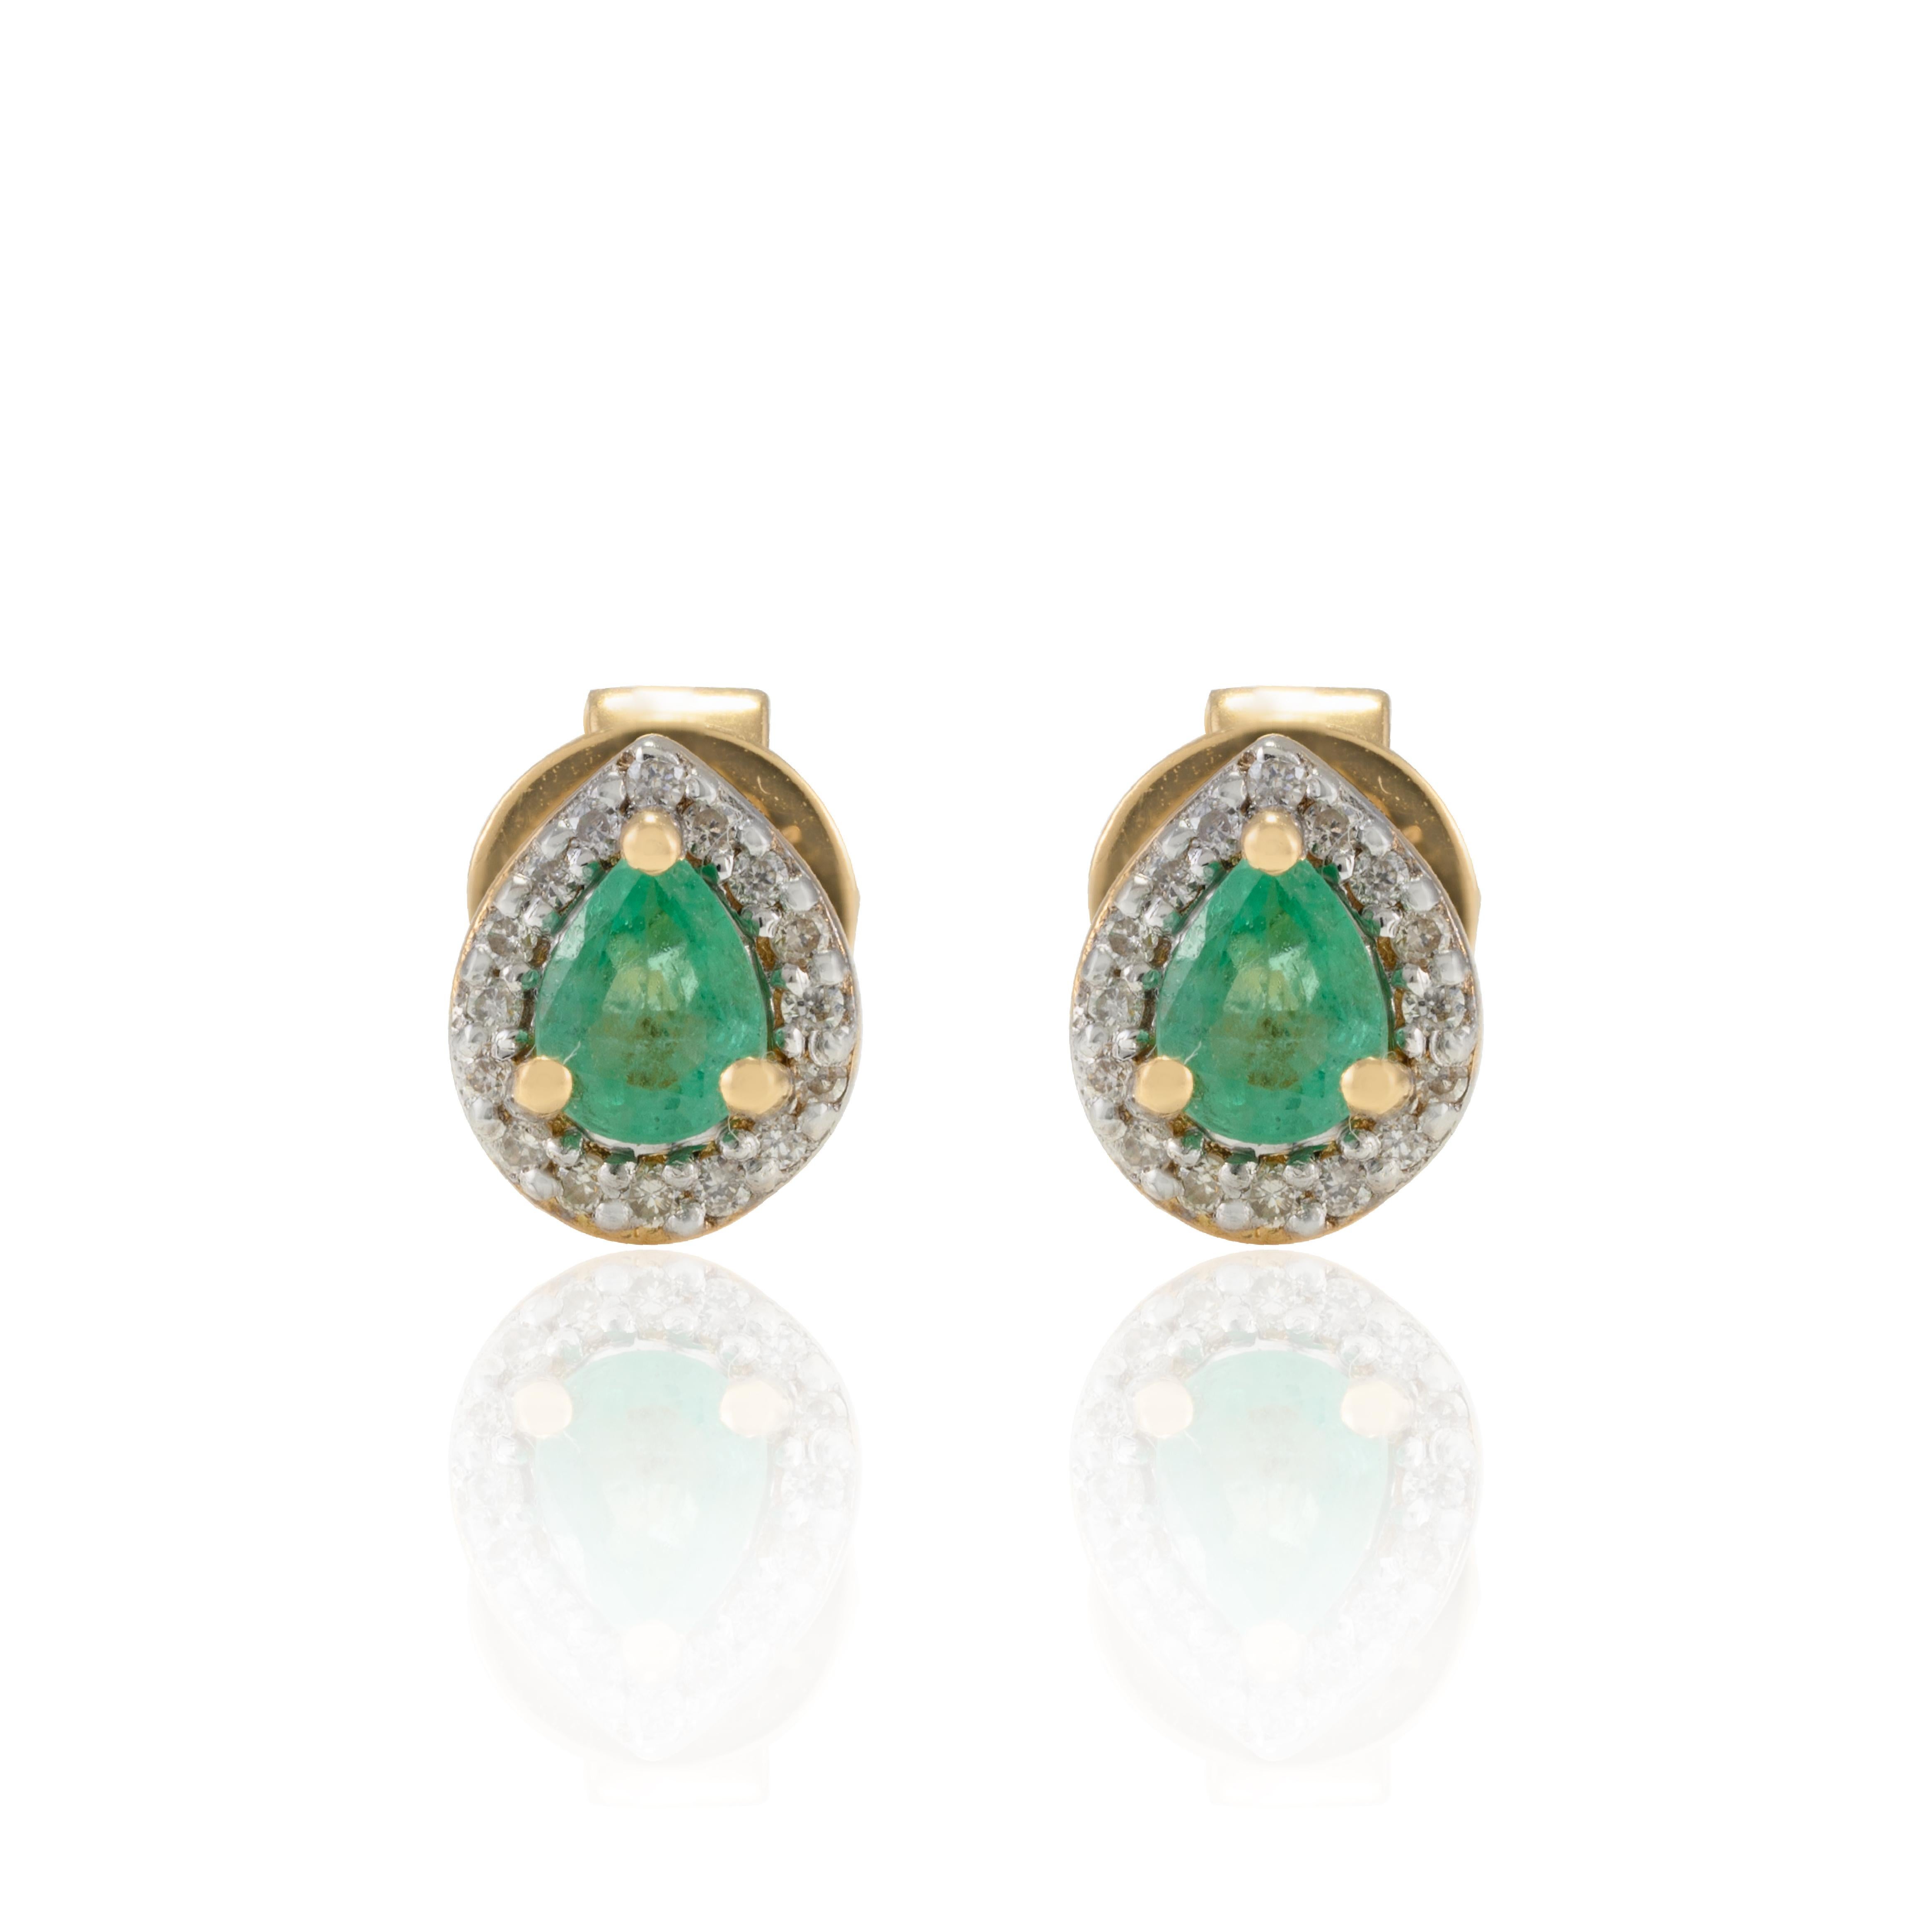 Zierliche Birne Smaragd Halo Diamant Alltag Ohrstecker in 18K Gold, um eine Aussage mit Ihrem Look zu machen. Sie brauchen Ohrstecker, um mit Ihrem Look ein Statement zu setzen. Diese Ohrringe mit einem Smaragd im Birnenschliff sorgen für einen